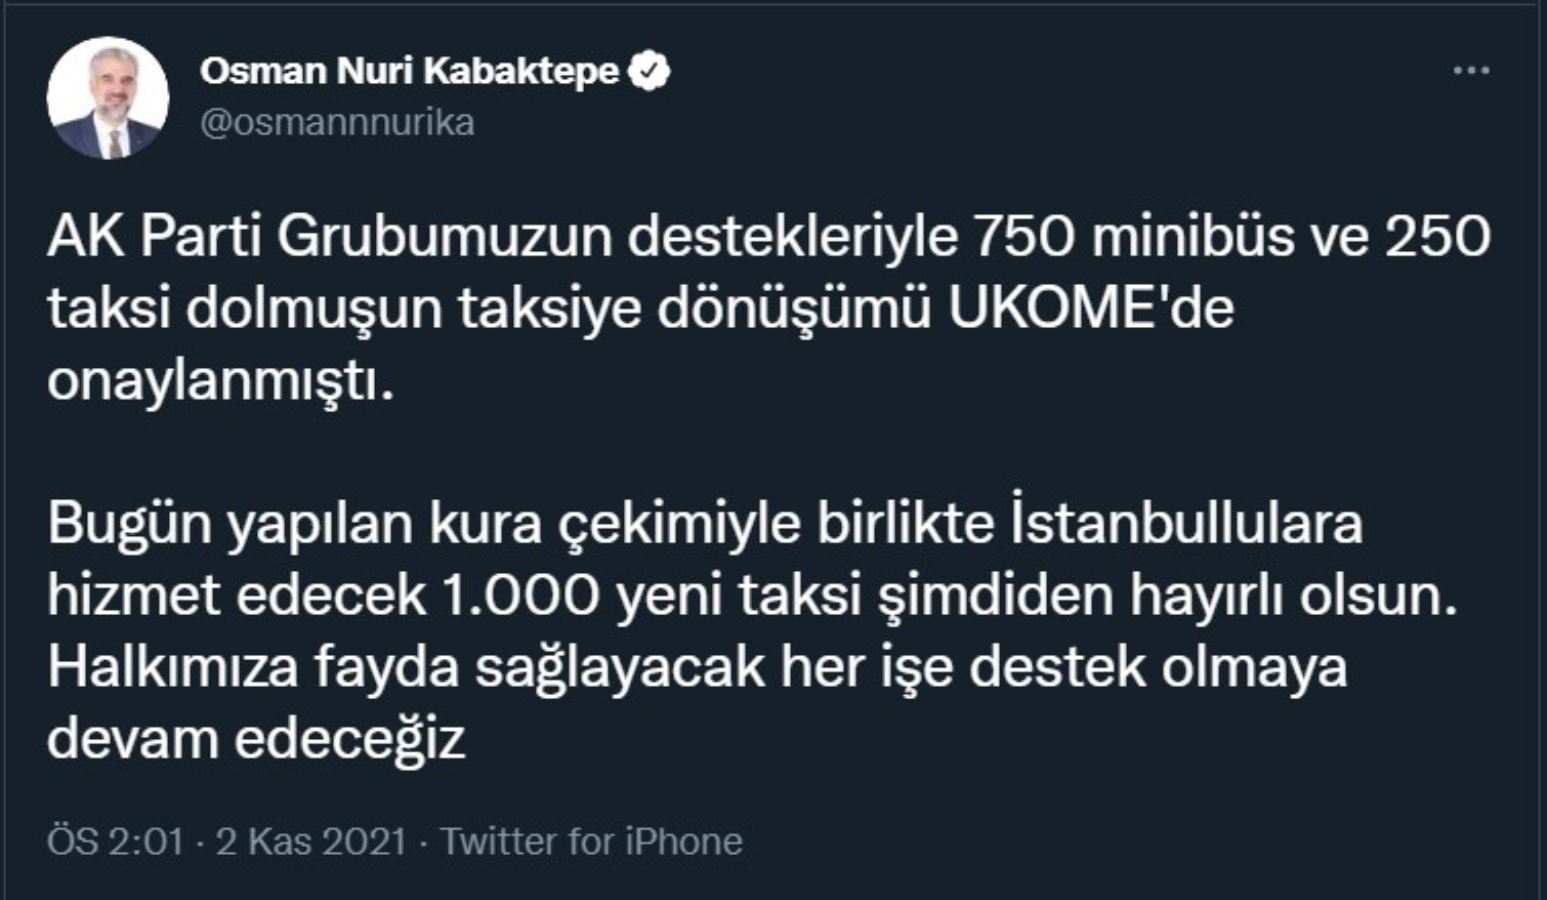 AKP'li Kabaktepe'den dikkat çeken taksi paylaşımı: "AK Parti" grubu diye niteledi"